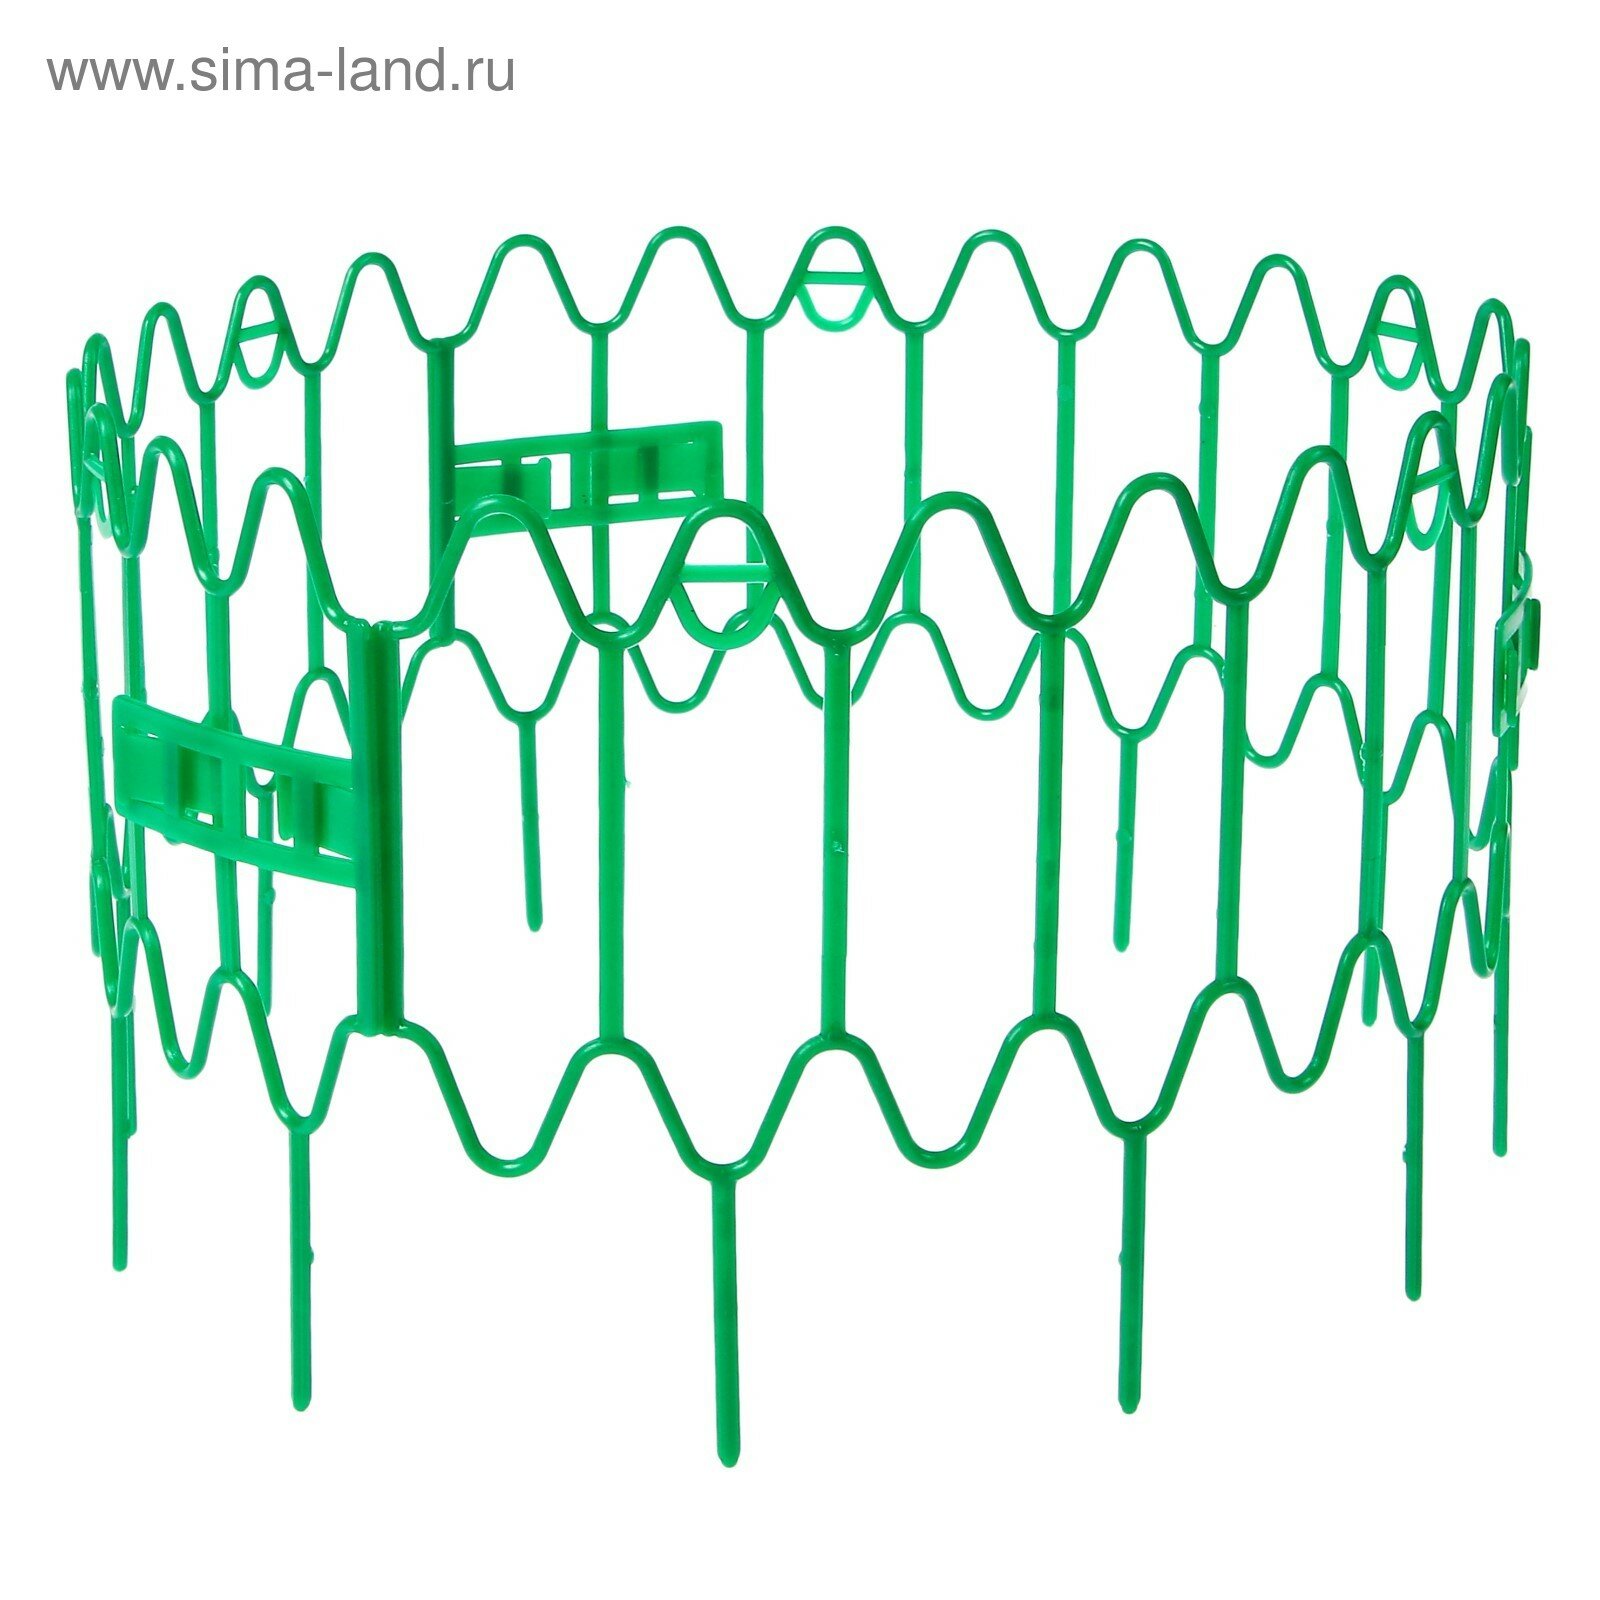 Кустодержатель для клубники d = 15 см h = 18 см пластик набор 10 шт зелёный «Волна»